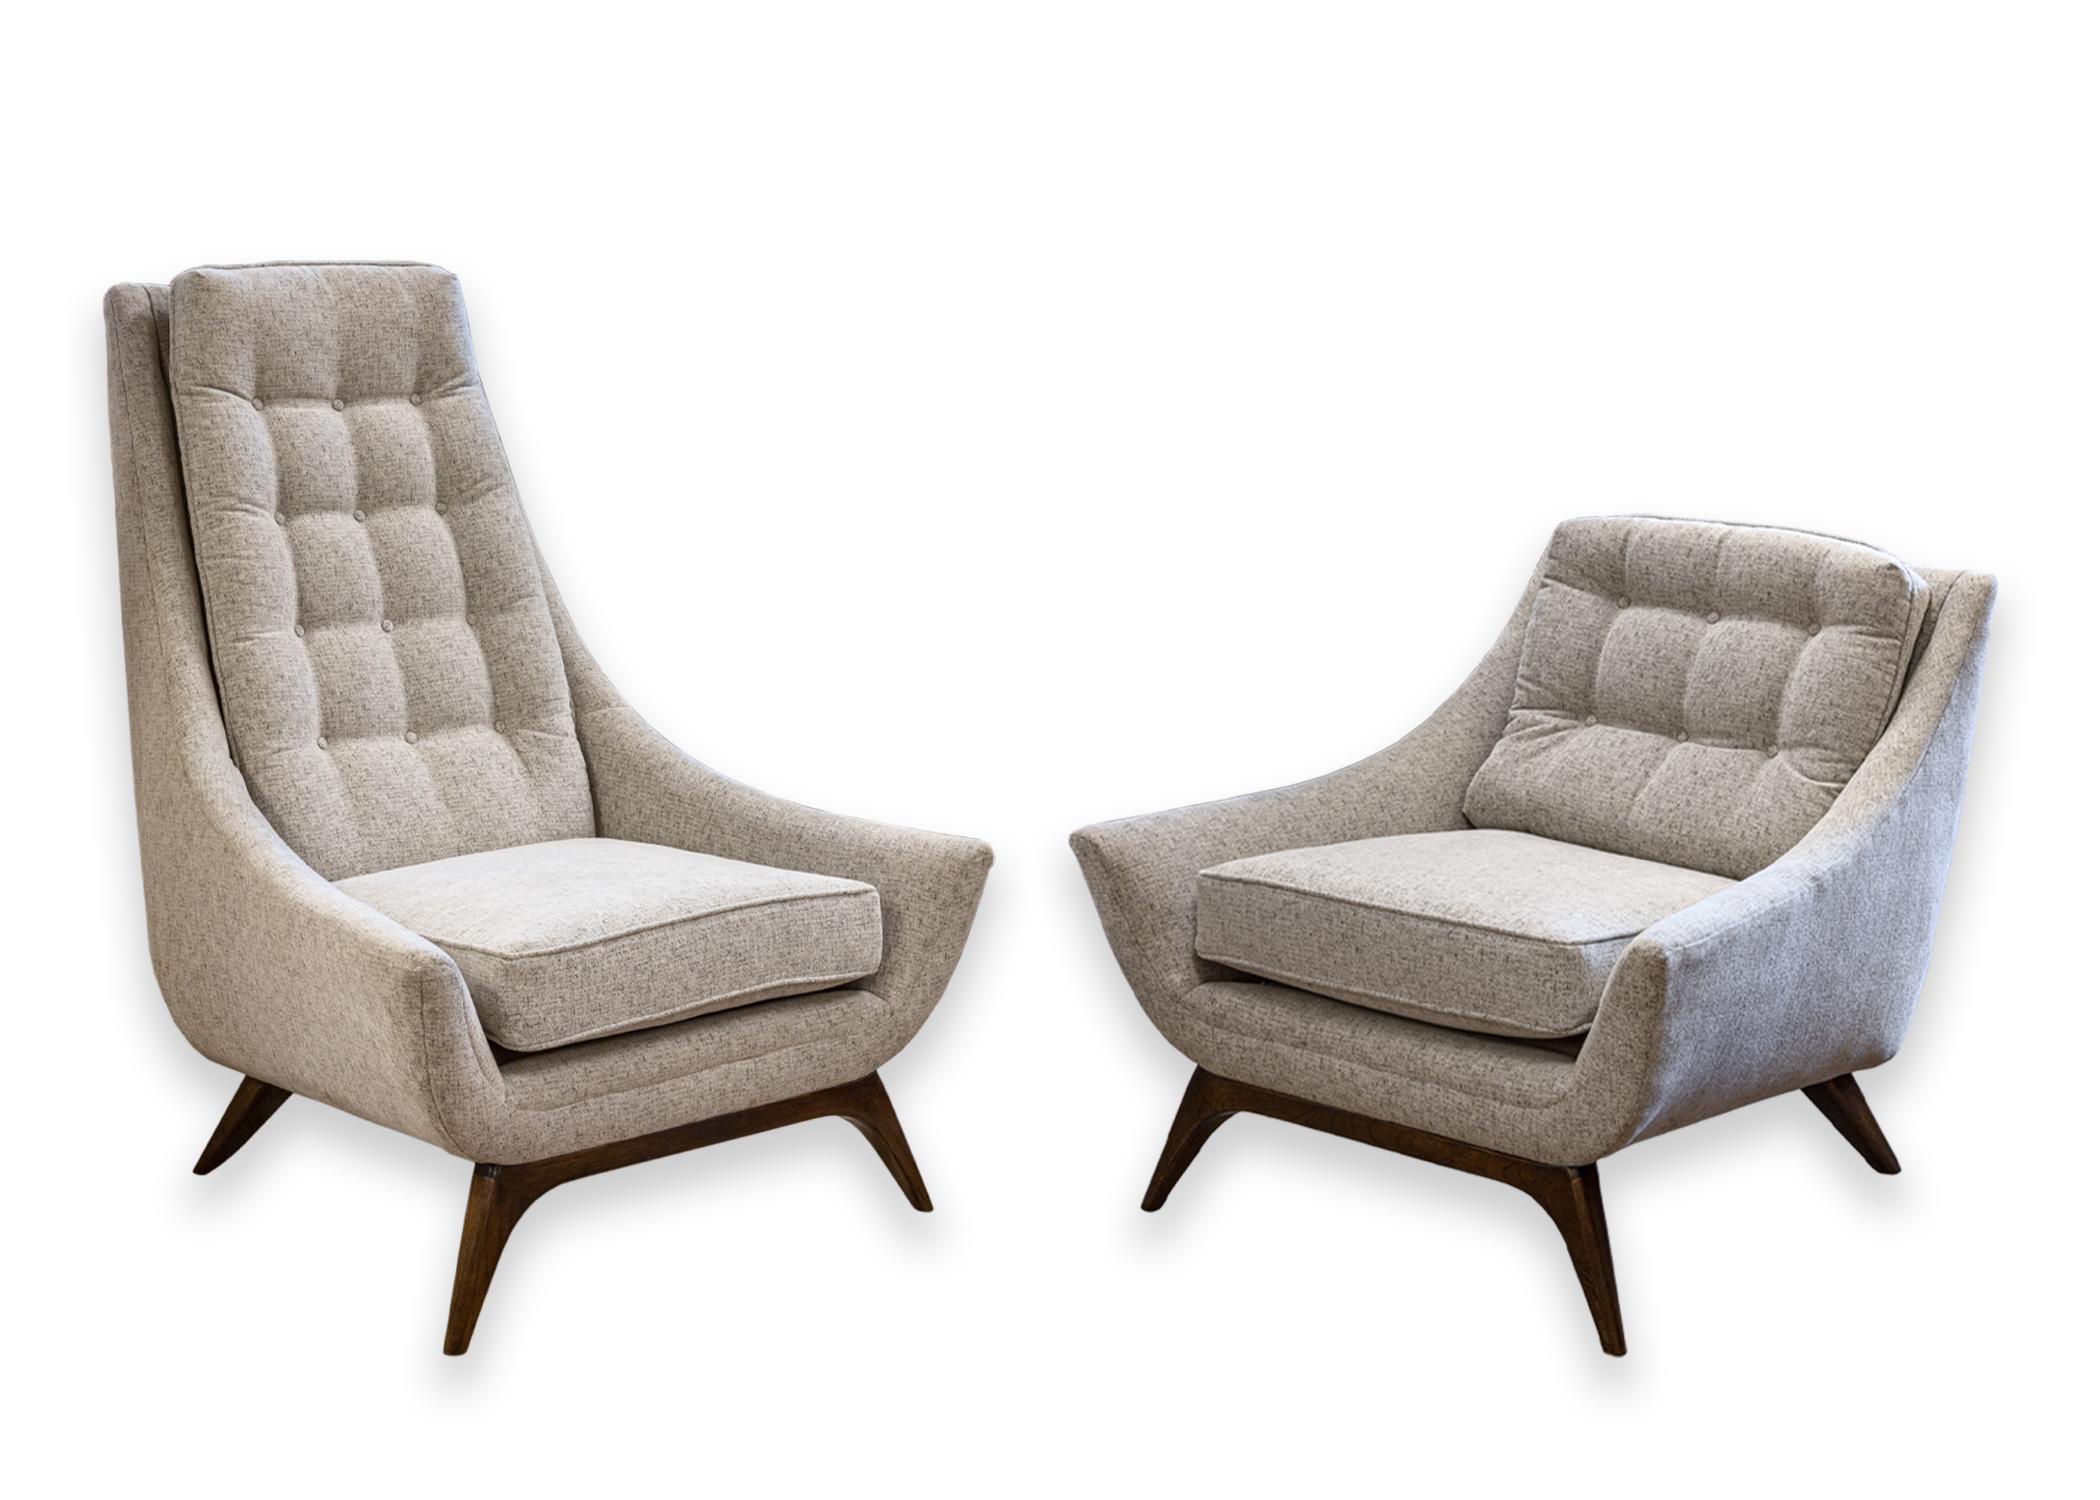 Un ensemble de fauteuils d'appoint de style Adrian Pearsall. Un magnifique ensemble de chaises tapissées avec un tissu gris tufté et des pieds en noyer. Chaque chaise est d'une taille et d'une proportion différentes, la sienne et la sienne. La